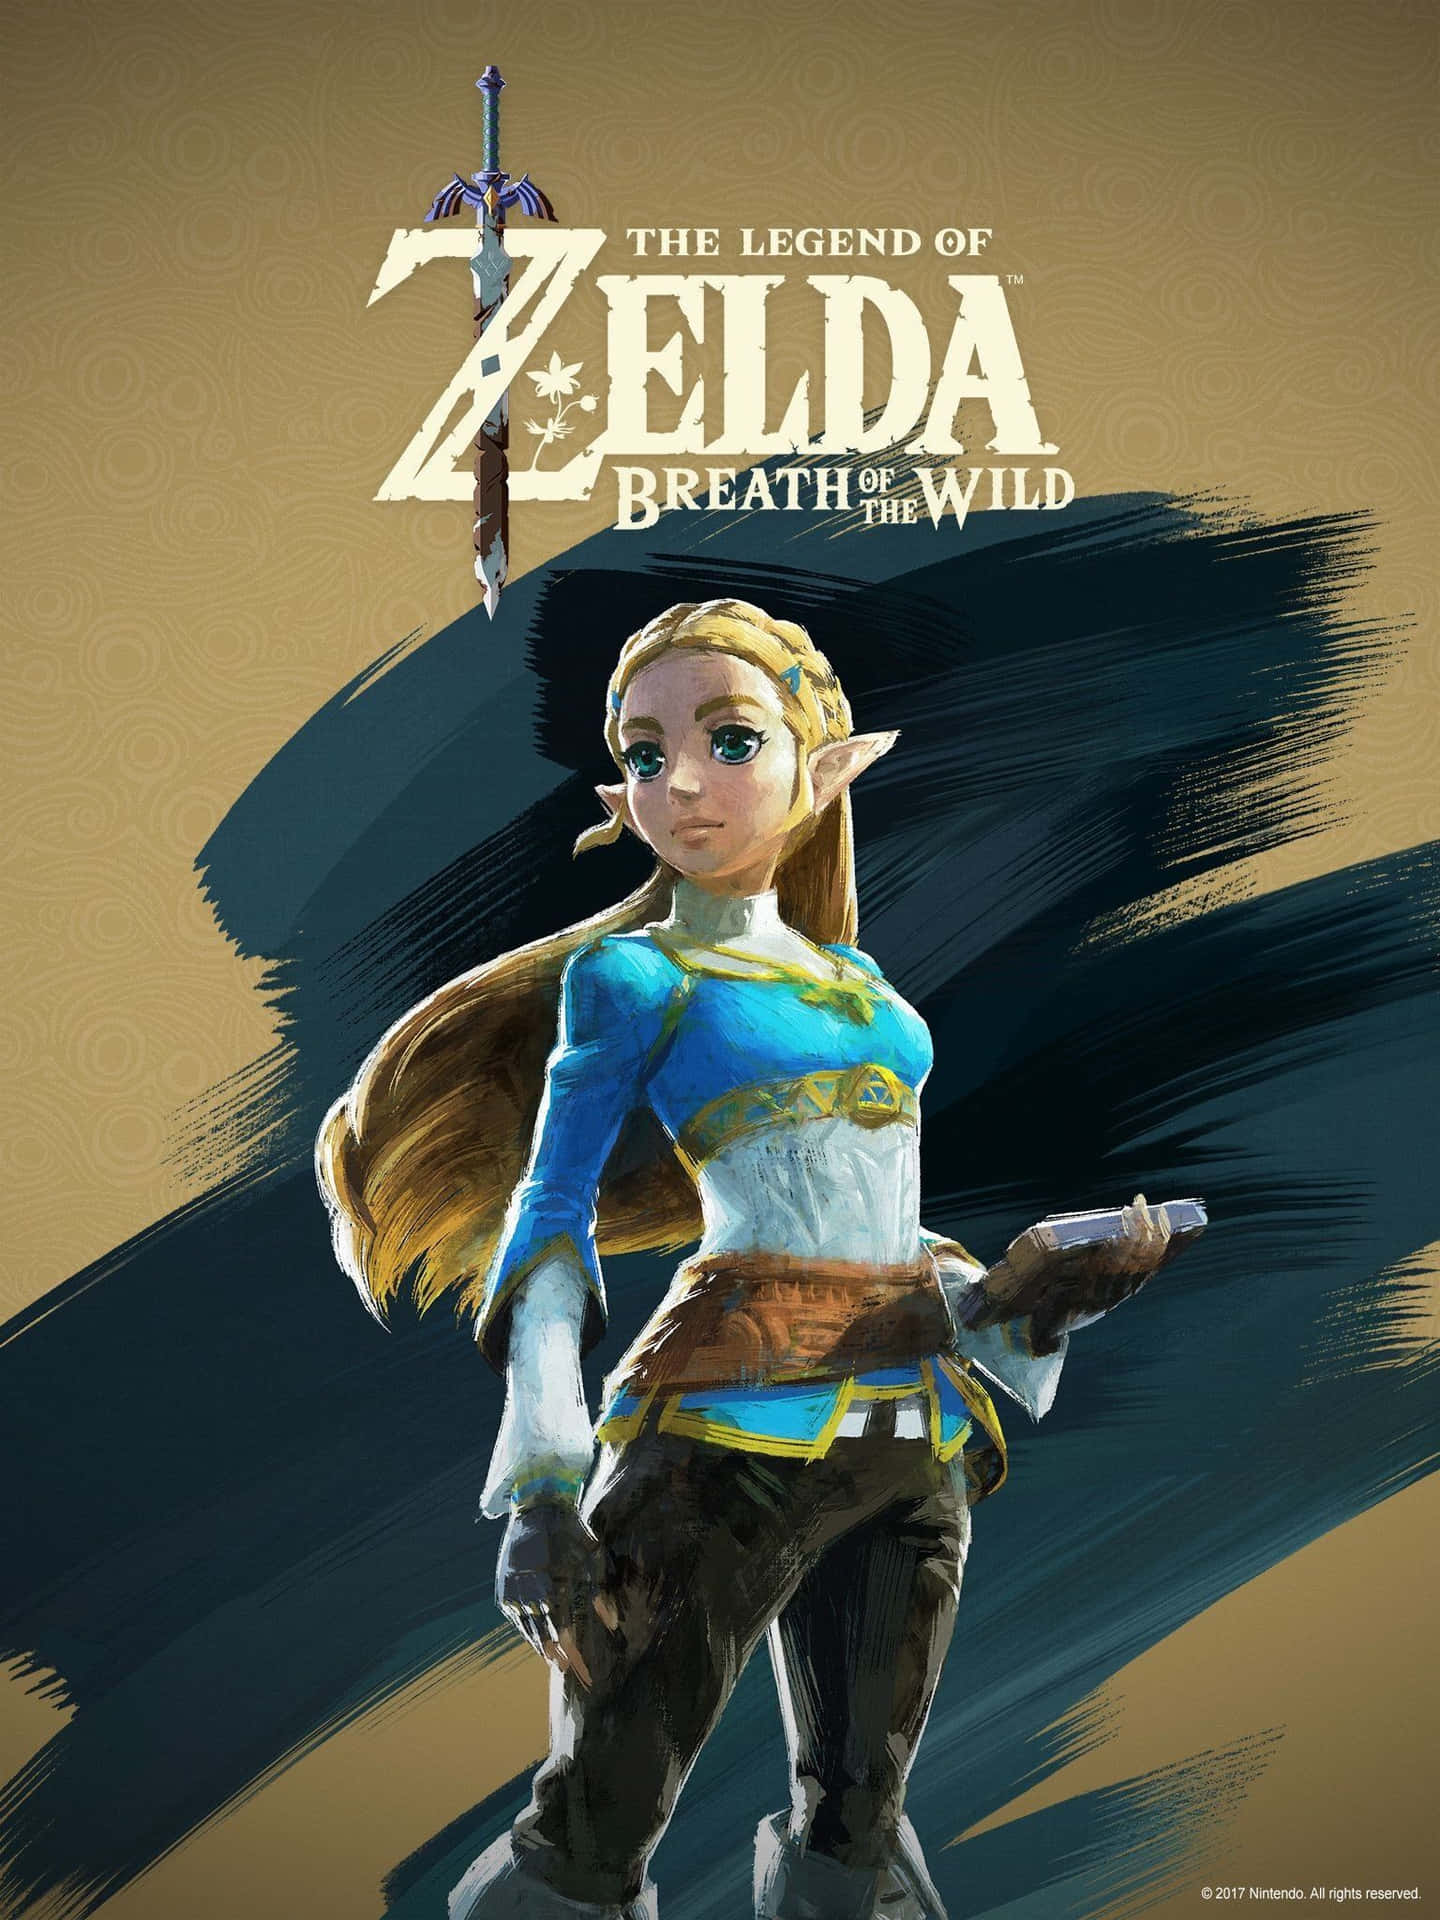 Tag med på eventyret med The Legend of Zelda-tapet til iPhone. Wallpaper